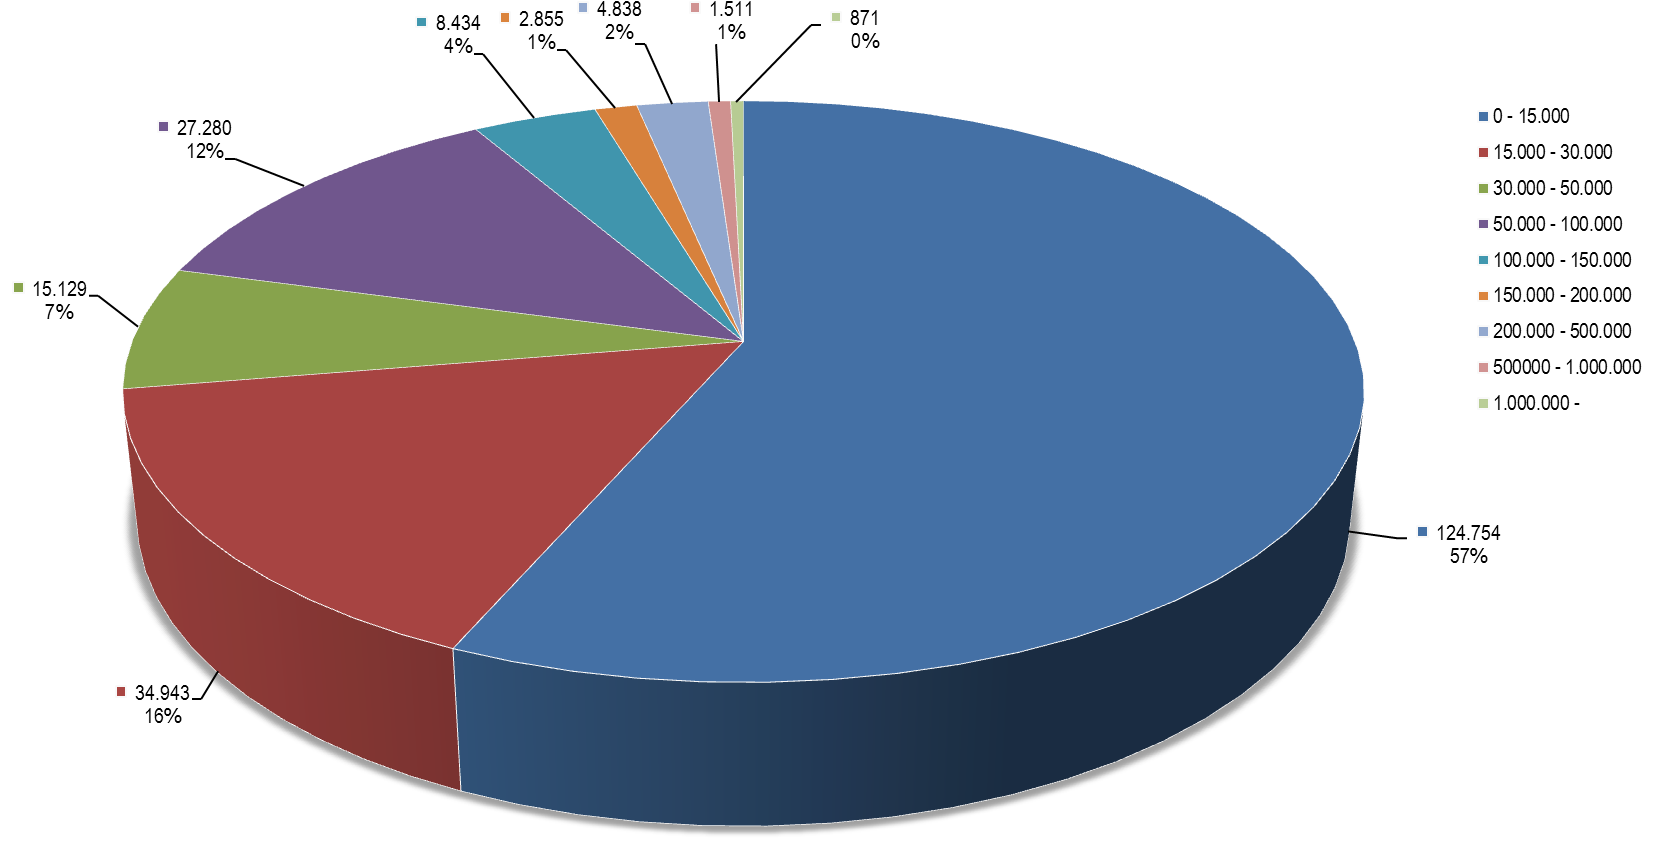 μεγάλο μέρος του υπολοίπου οφειλής αφορά λίγους μεγαλο-οφειλέτες (871 οφειλέτες συγκεντρώνουν το 26% του υπόλοιπου οφειλών) Τα παραπάνω